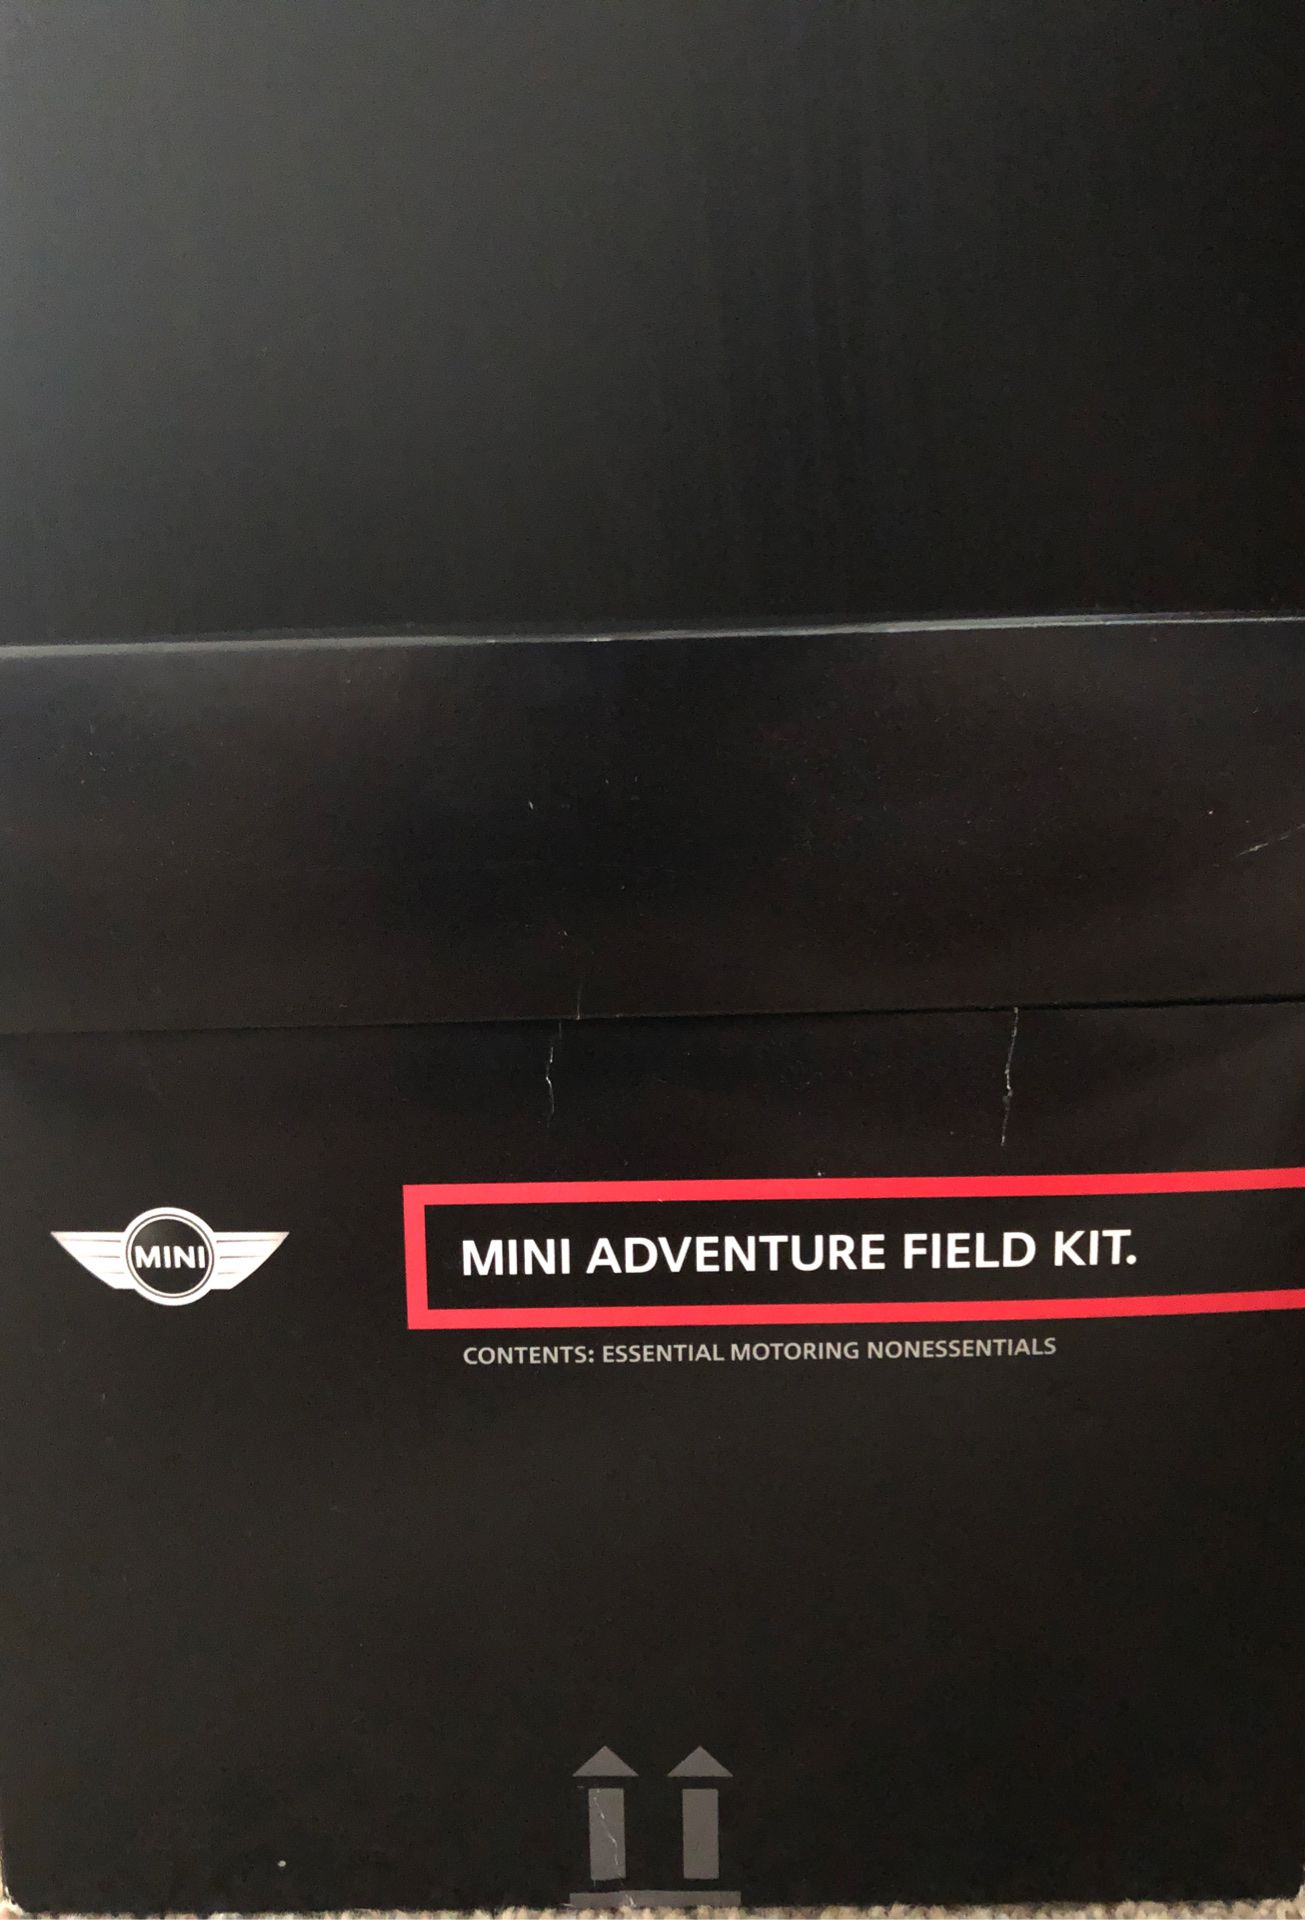 Mini Adventure Kit promo